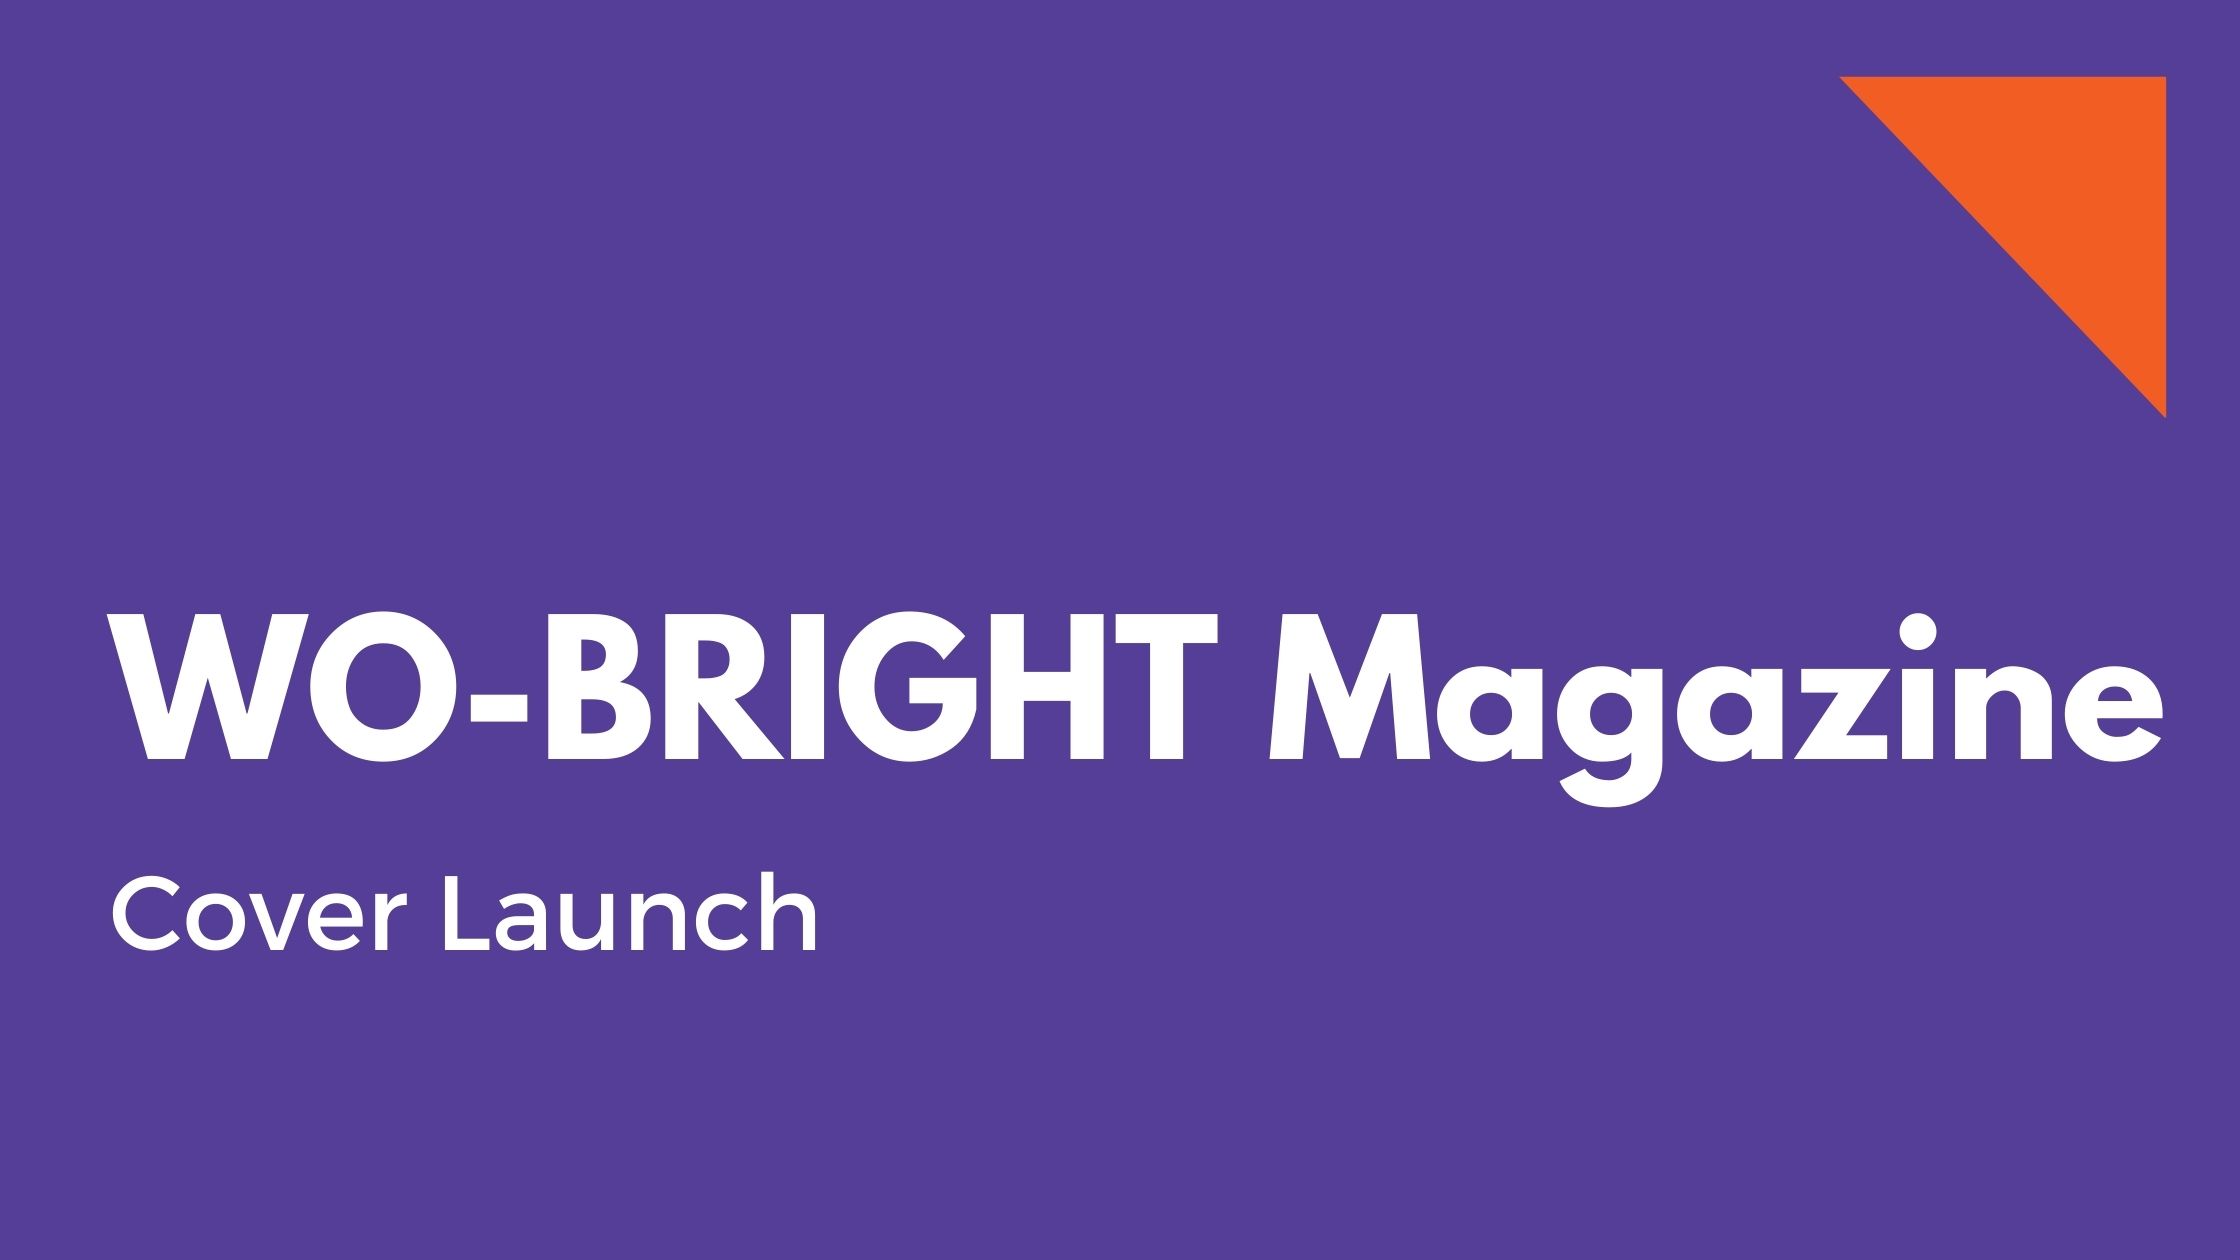 WO BRIGHT Magazine Cover Launch